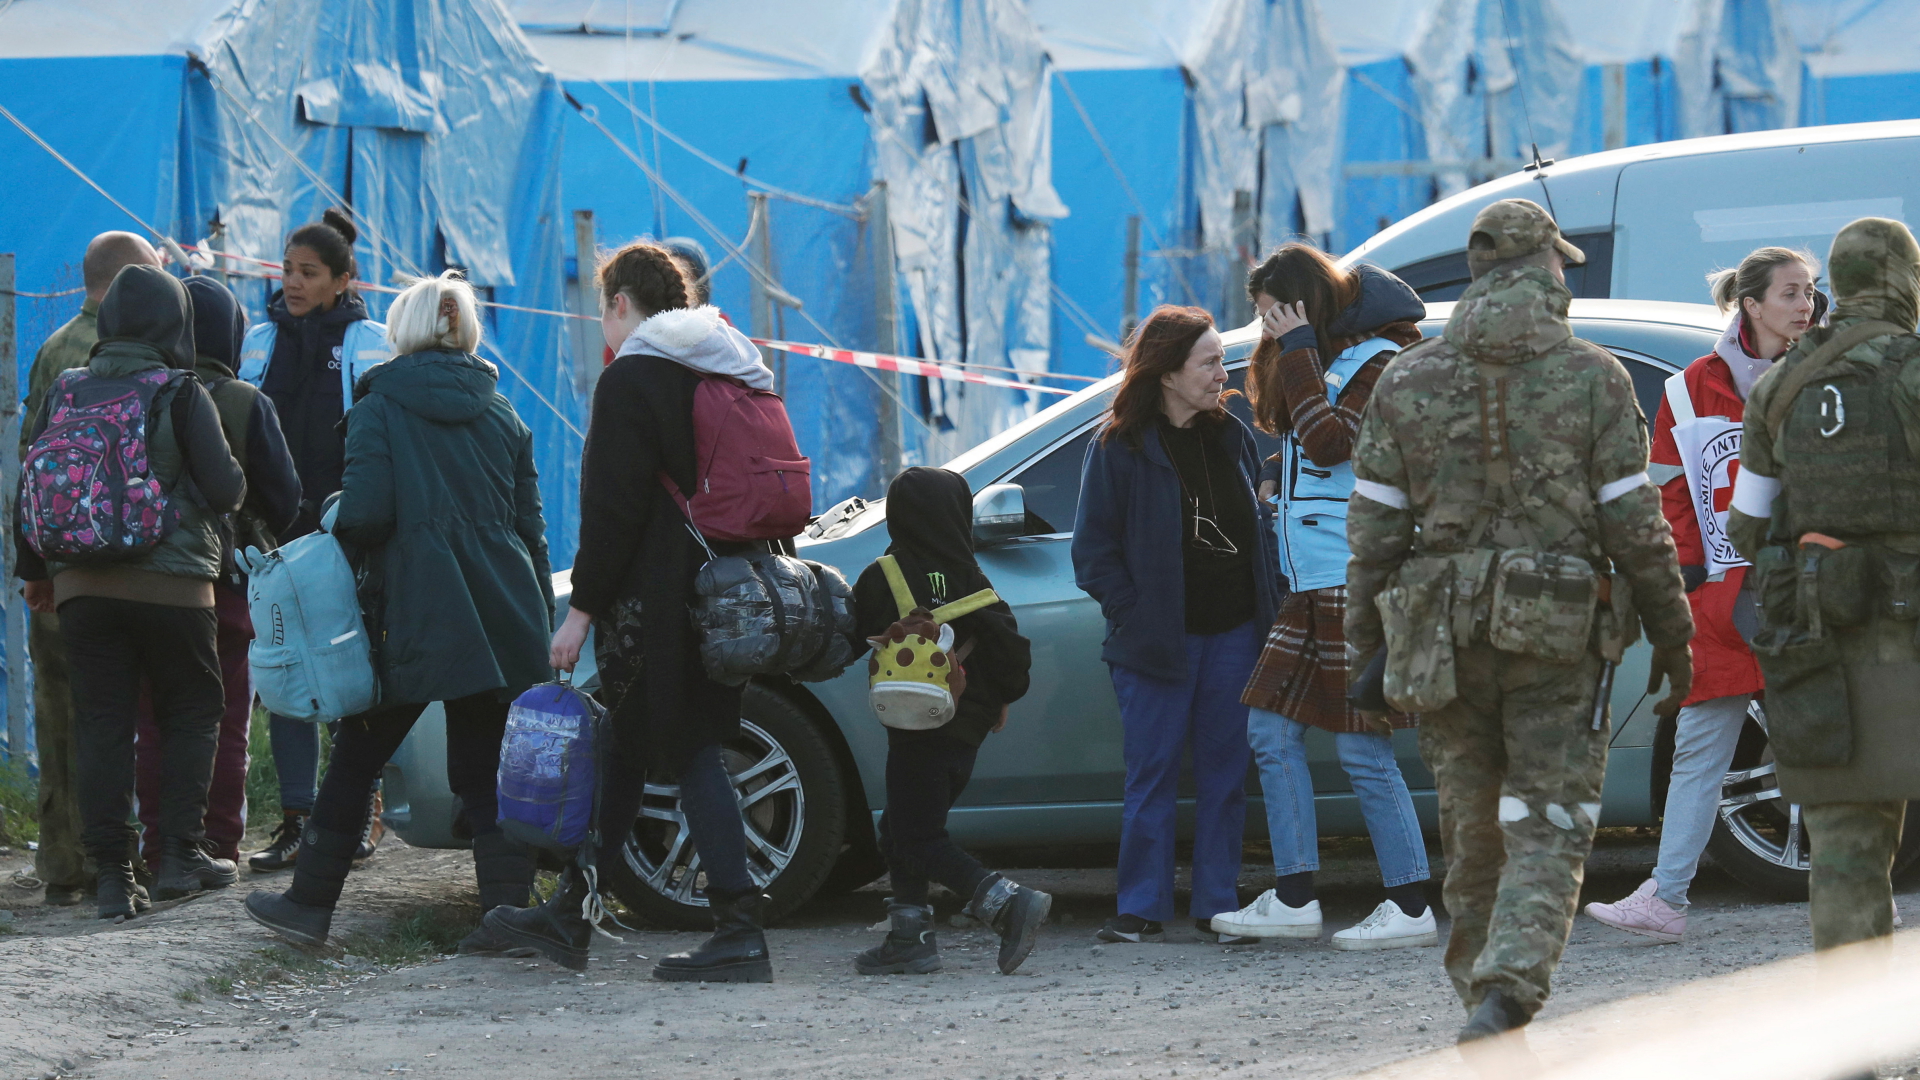 Aus dem Asow-Stahlwerk evakuierte Zivilisten kommen im ostukrainischen Dorf Bezimenne an, wo sie von Mitarbeitern des Roten Kreuzes und prorussischen Soldaten empfangen werden. | REUTERS